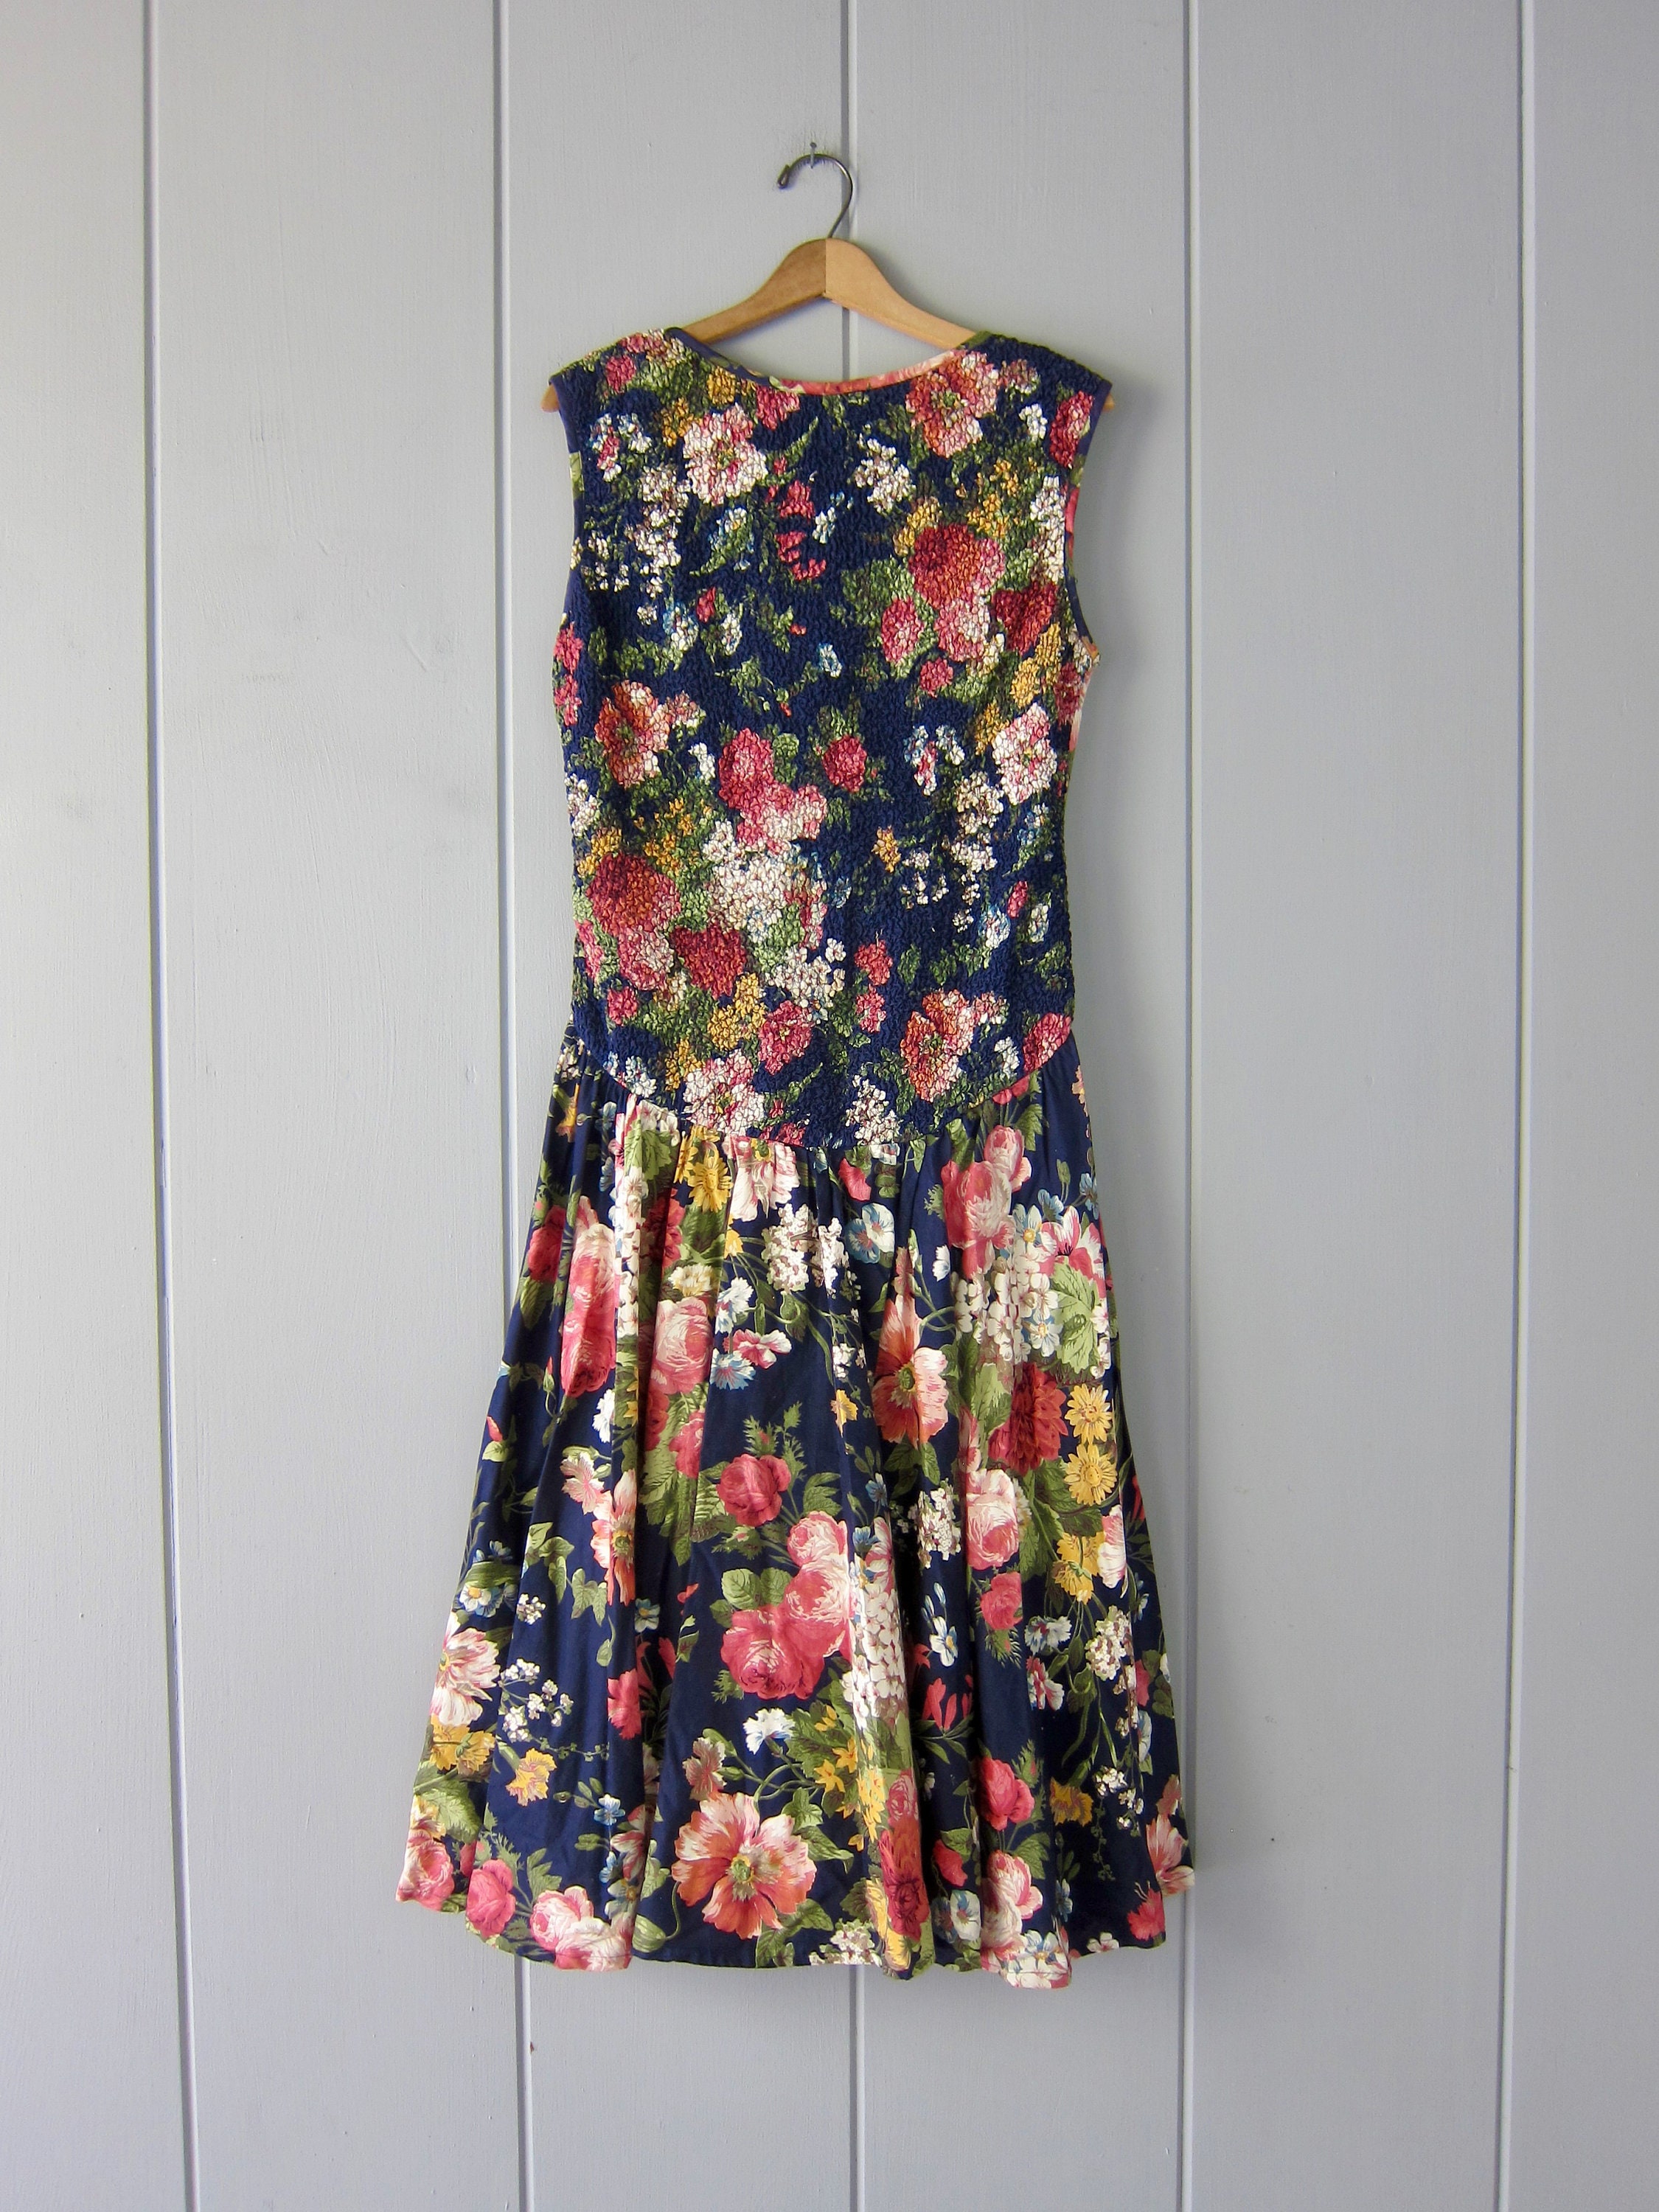 Vintage Long Floral Dress 80s Flower Print Market Dress | Etsy